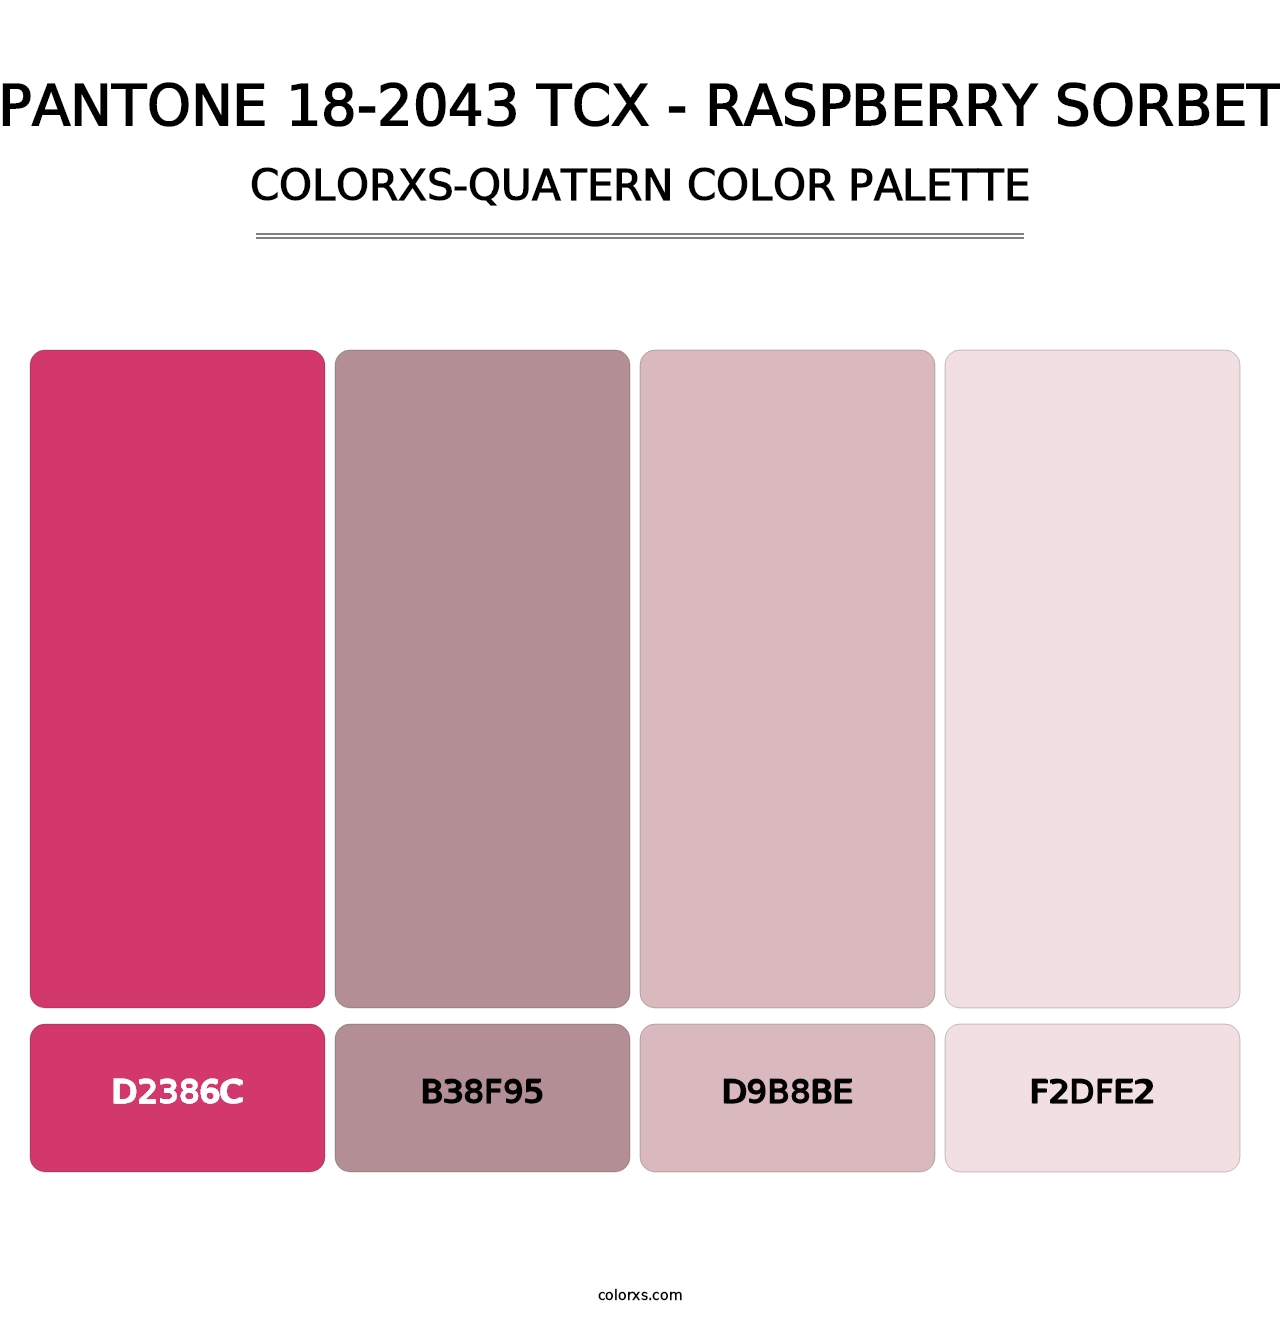 PANTONE 18-2043 TCX - Raspberry Sorbet - Colorxs Quatern Palette